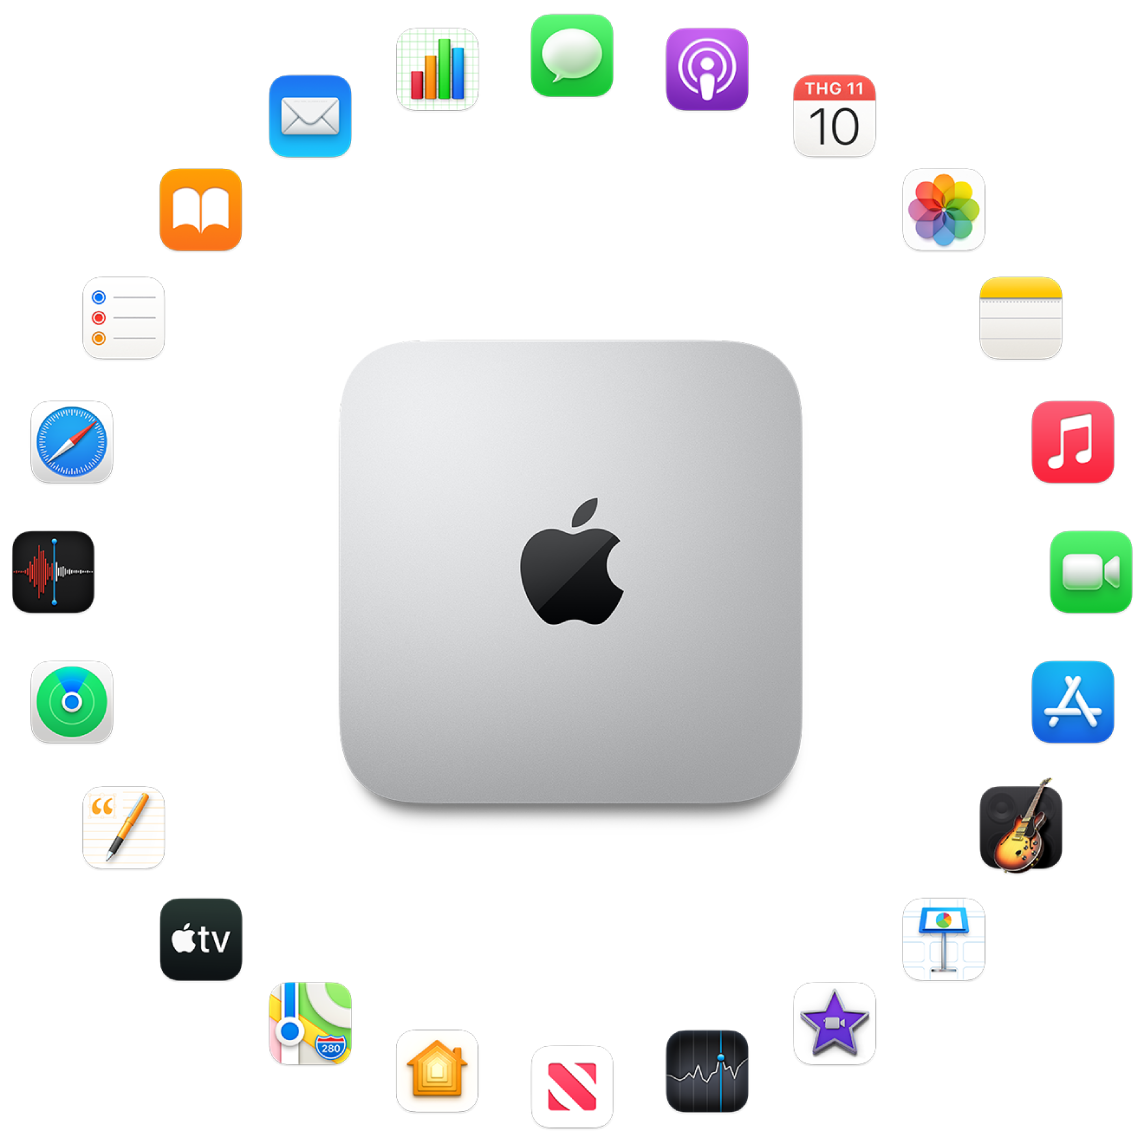 Một Mac mini được bao quanh bởi biểu tượng cho các ứng dụng tích hợp được mô tả trong các phần sau.